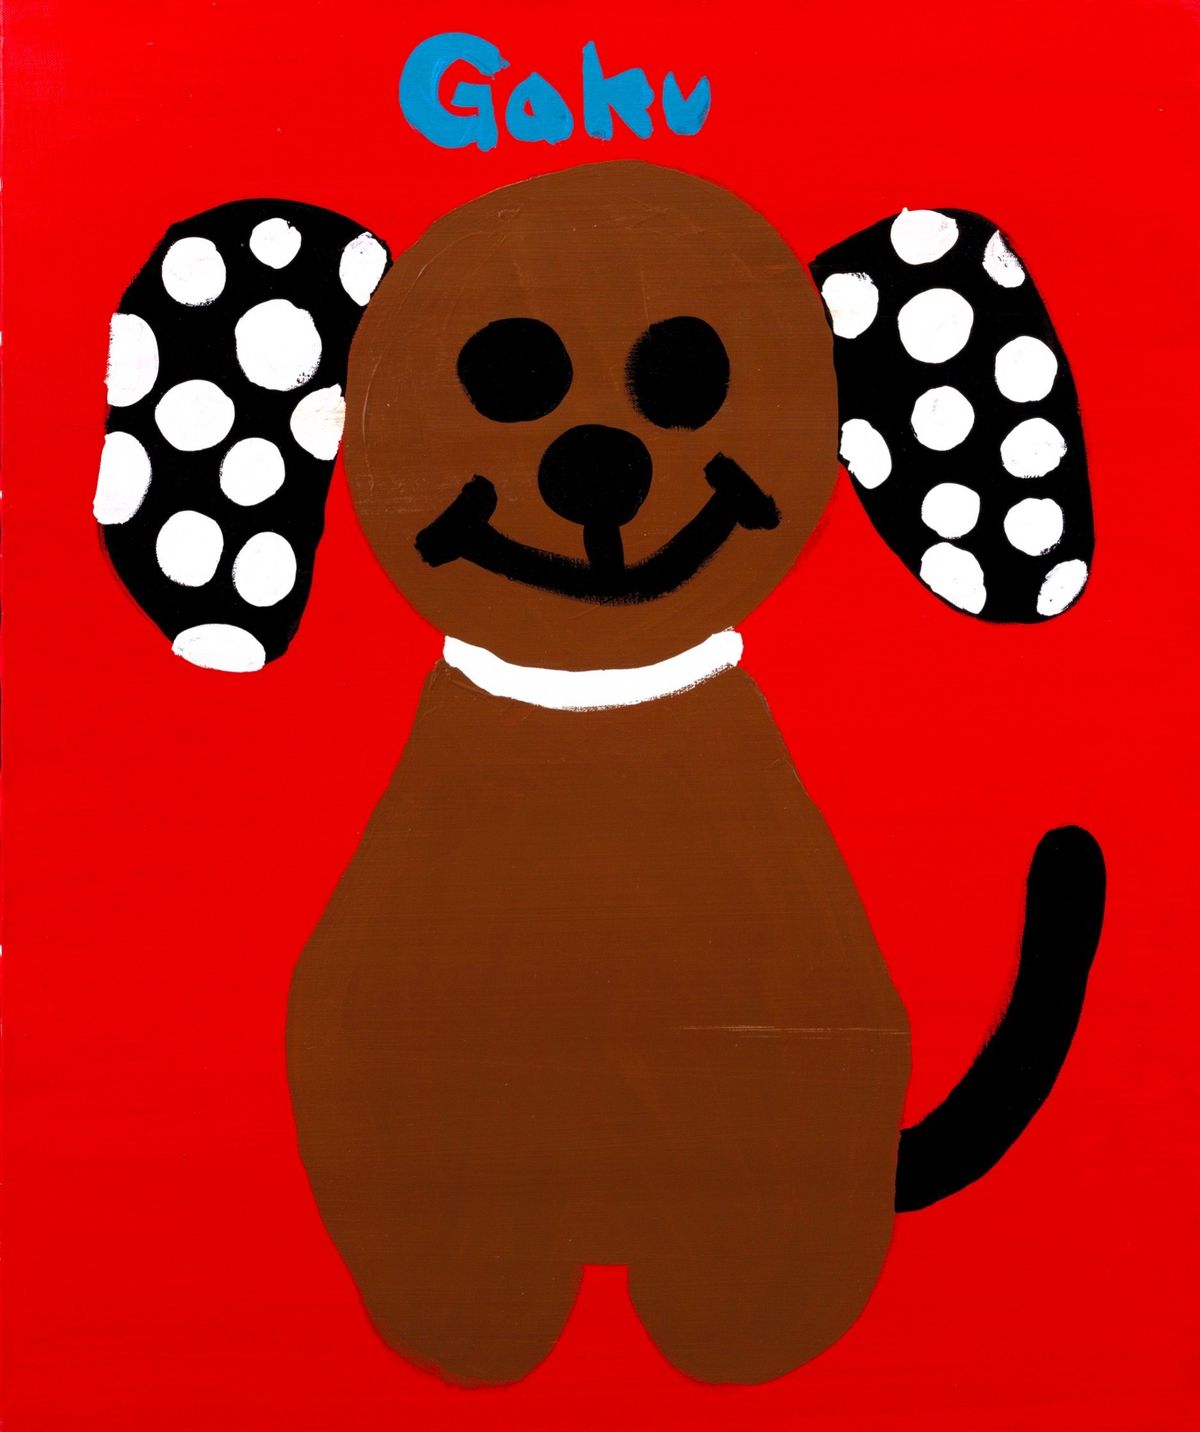 笑顔の犬を描いたGAKUさんの作品/提供:父･典雅さん